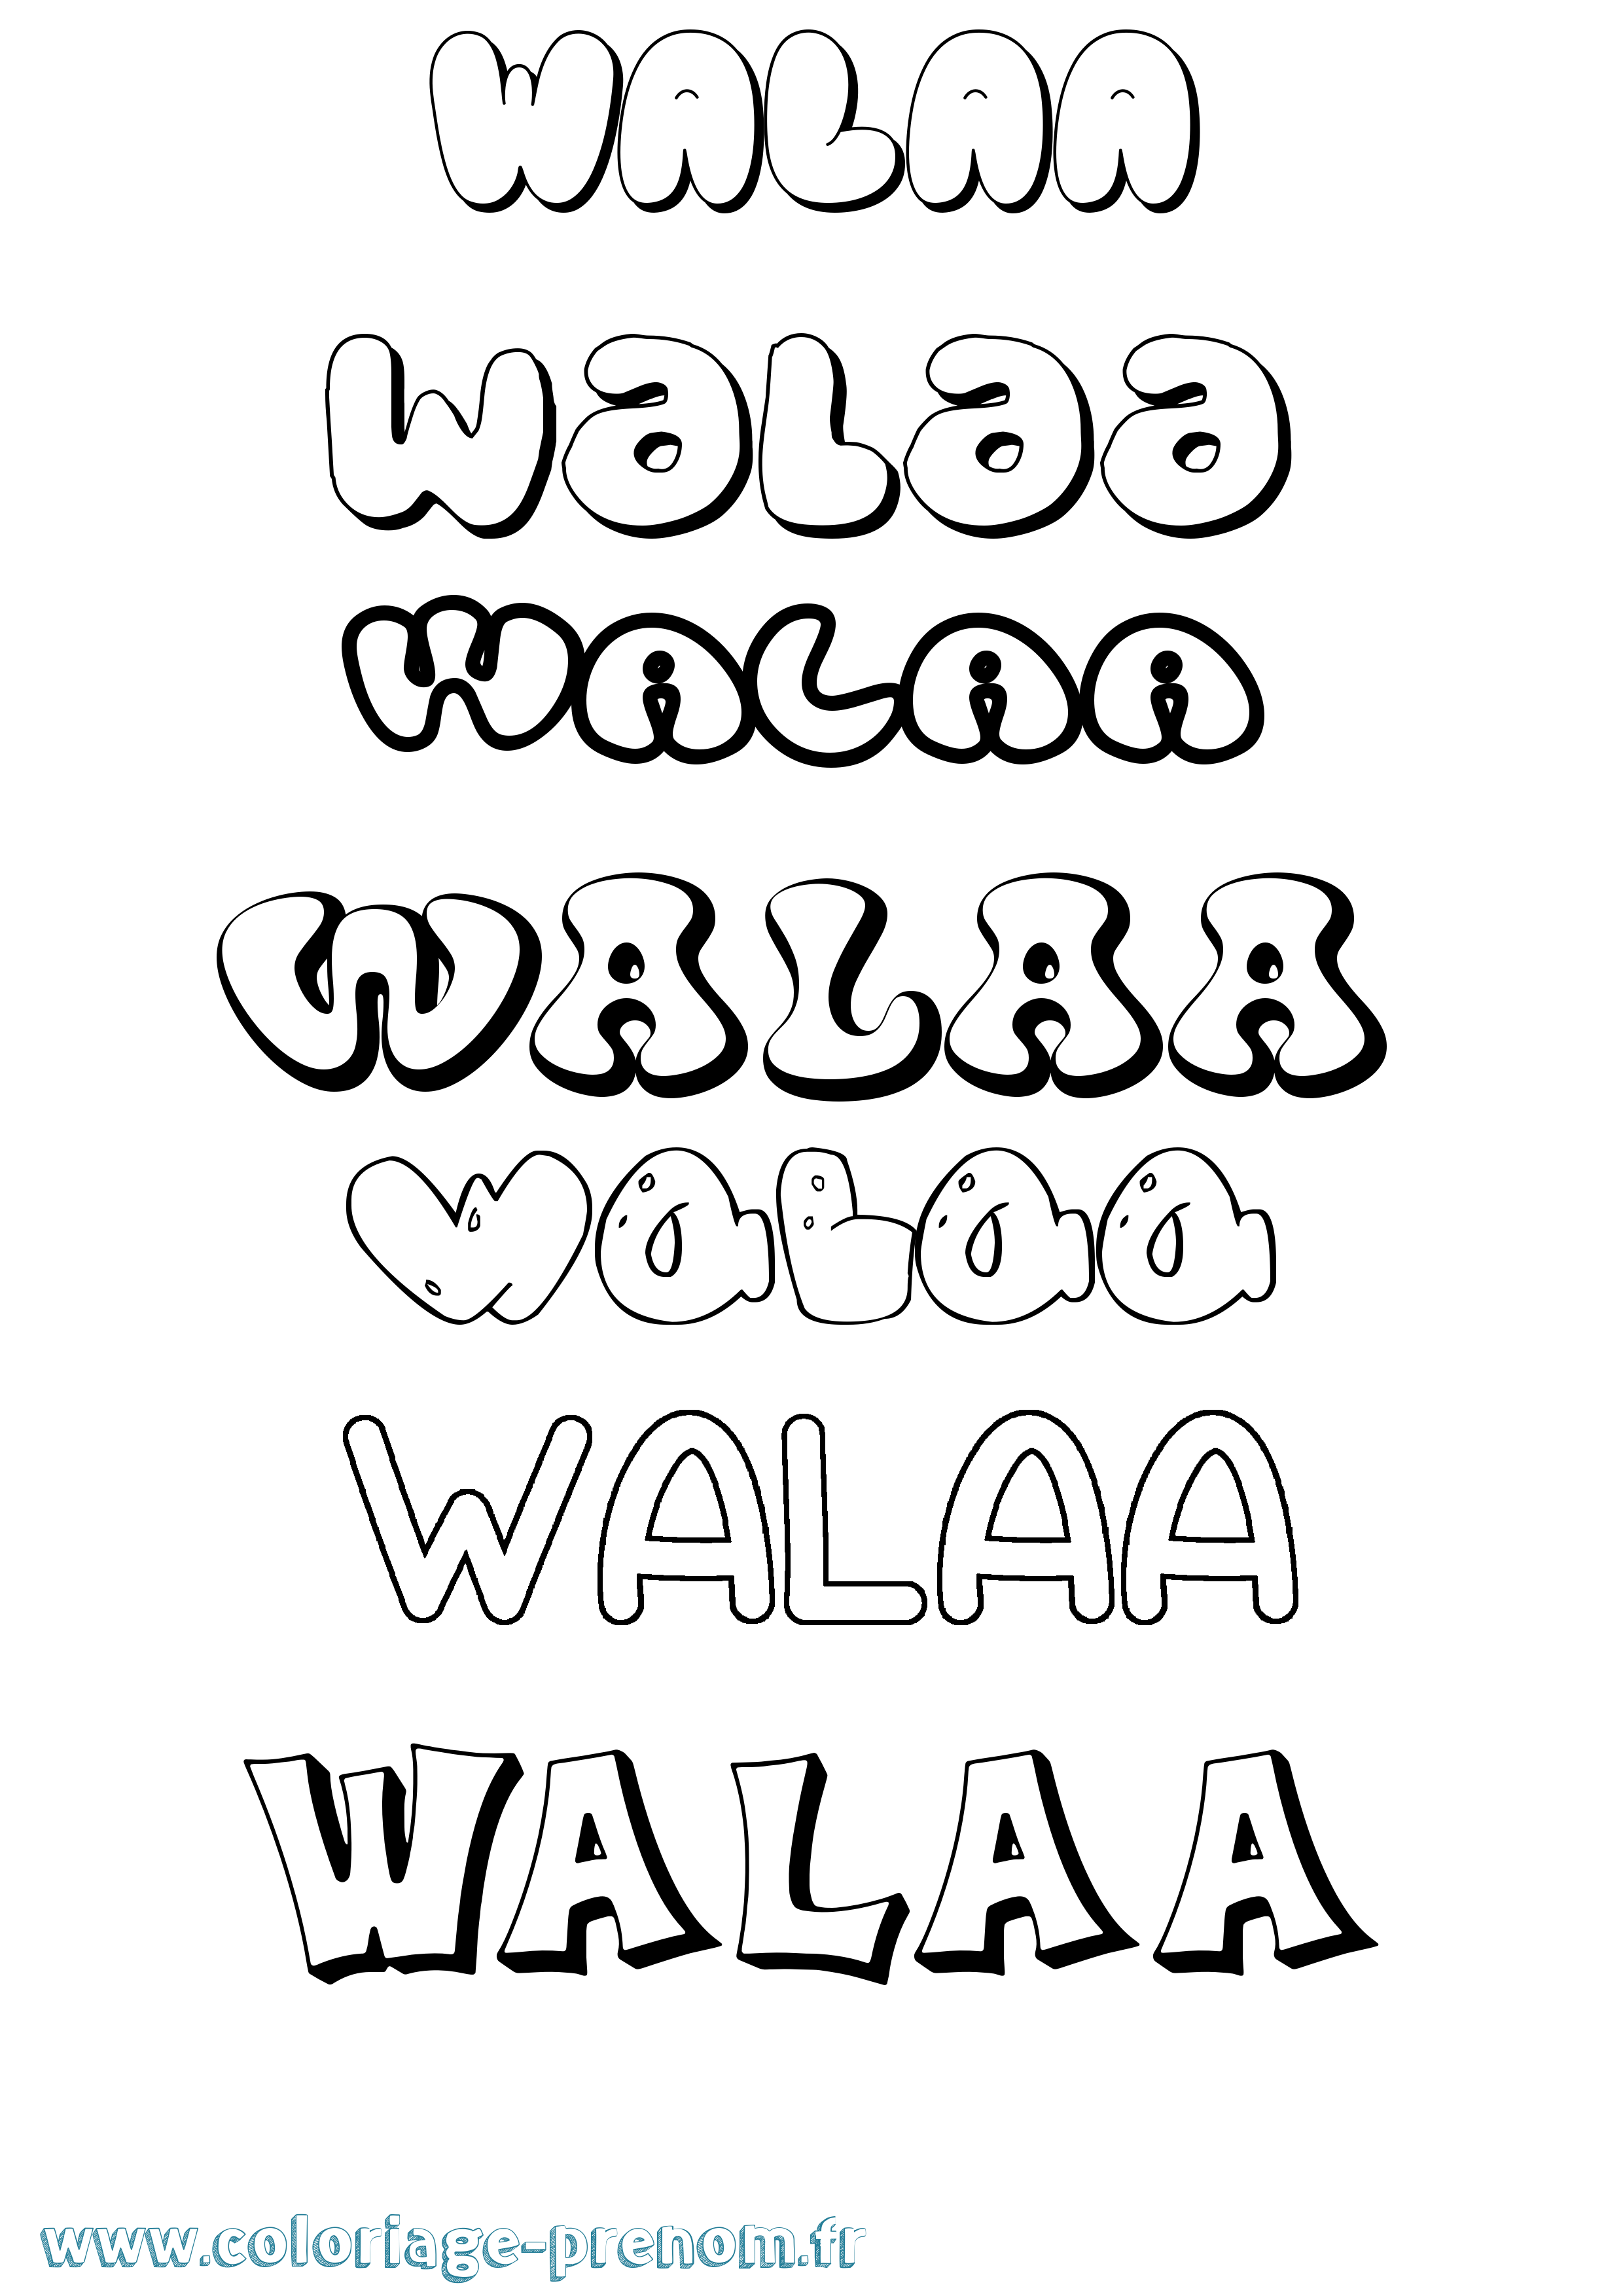 Coloriage prénom Walaa Bubble